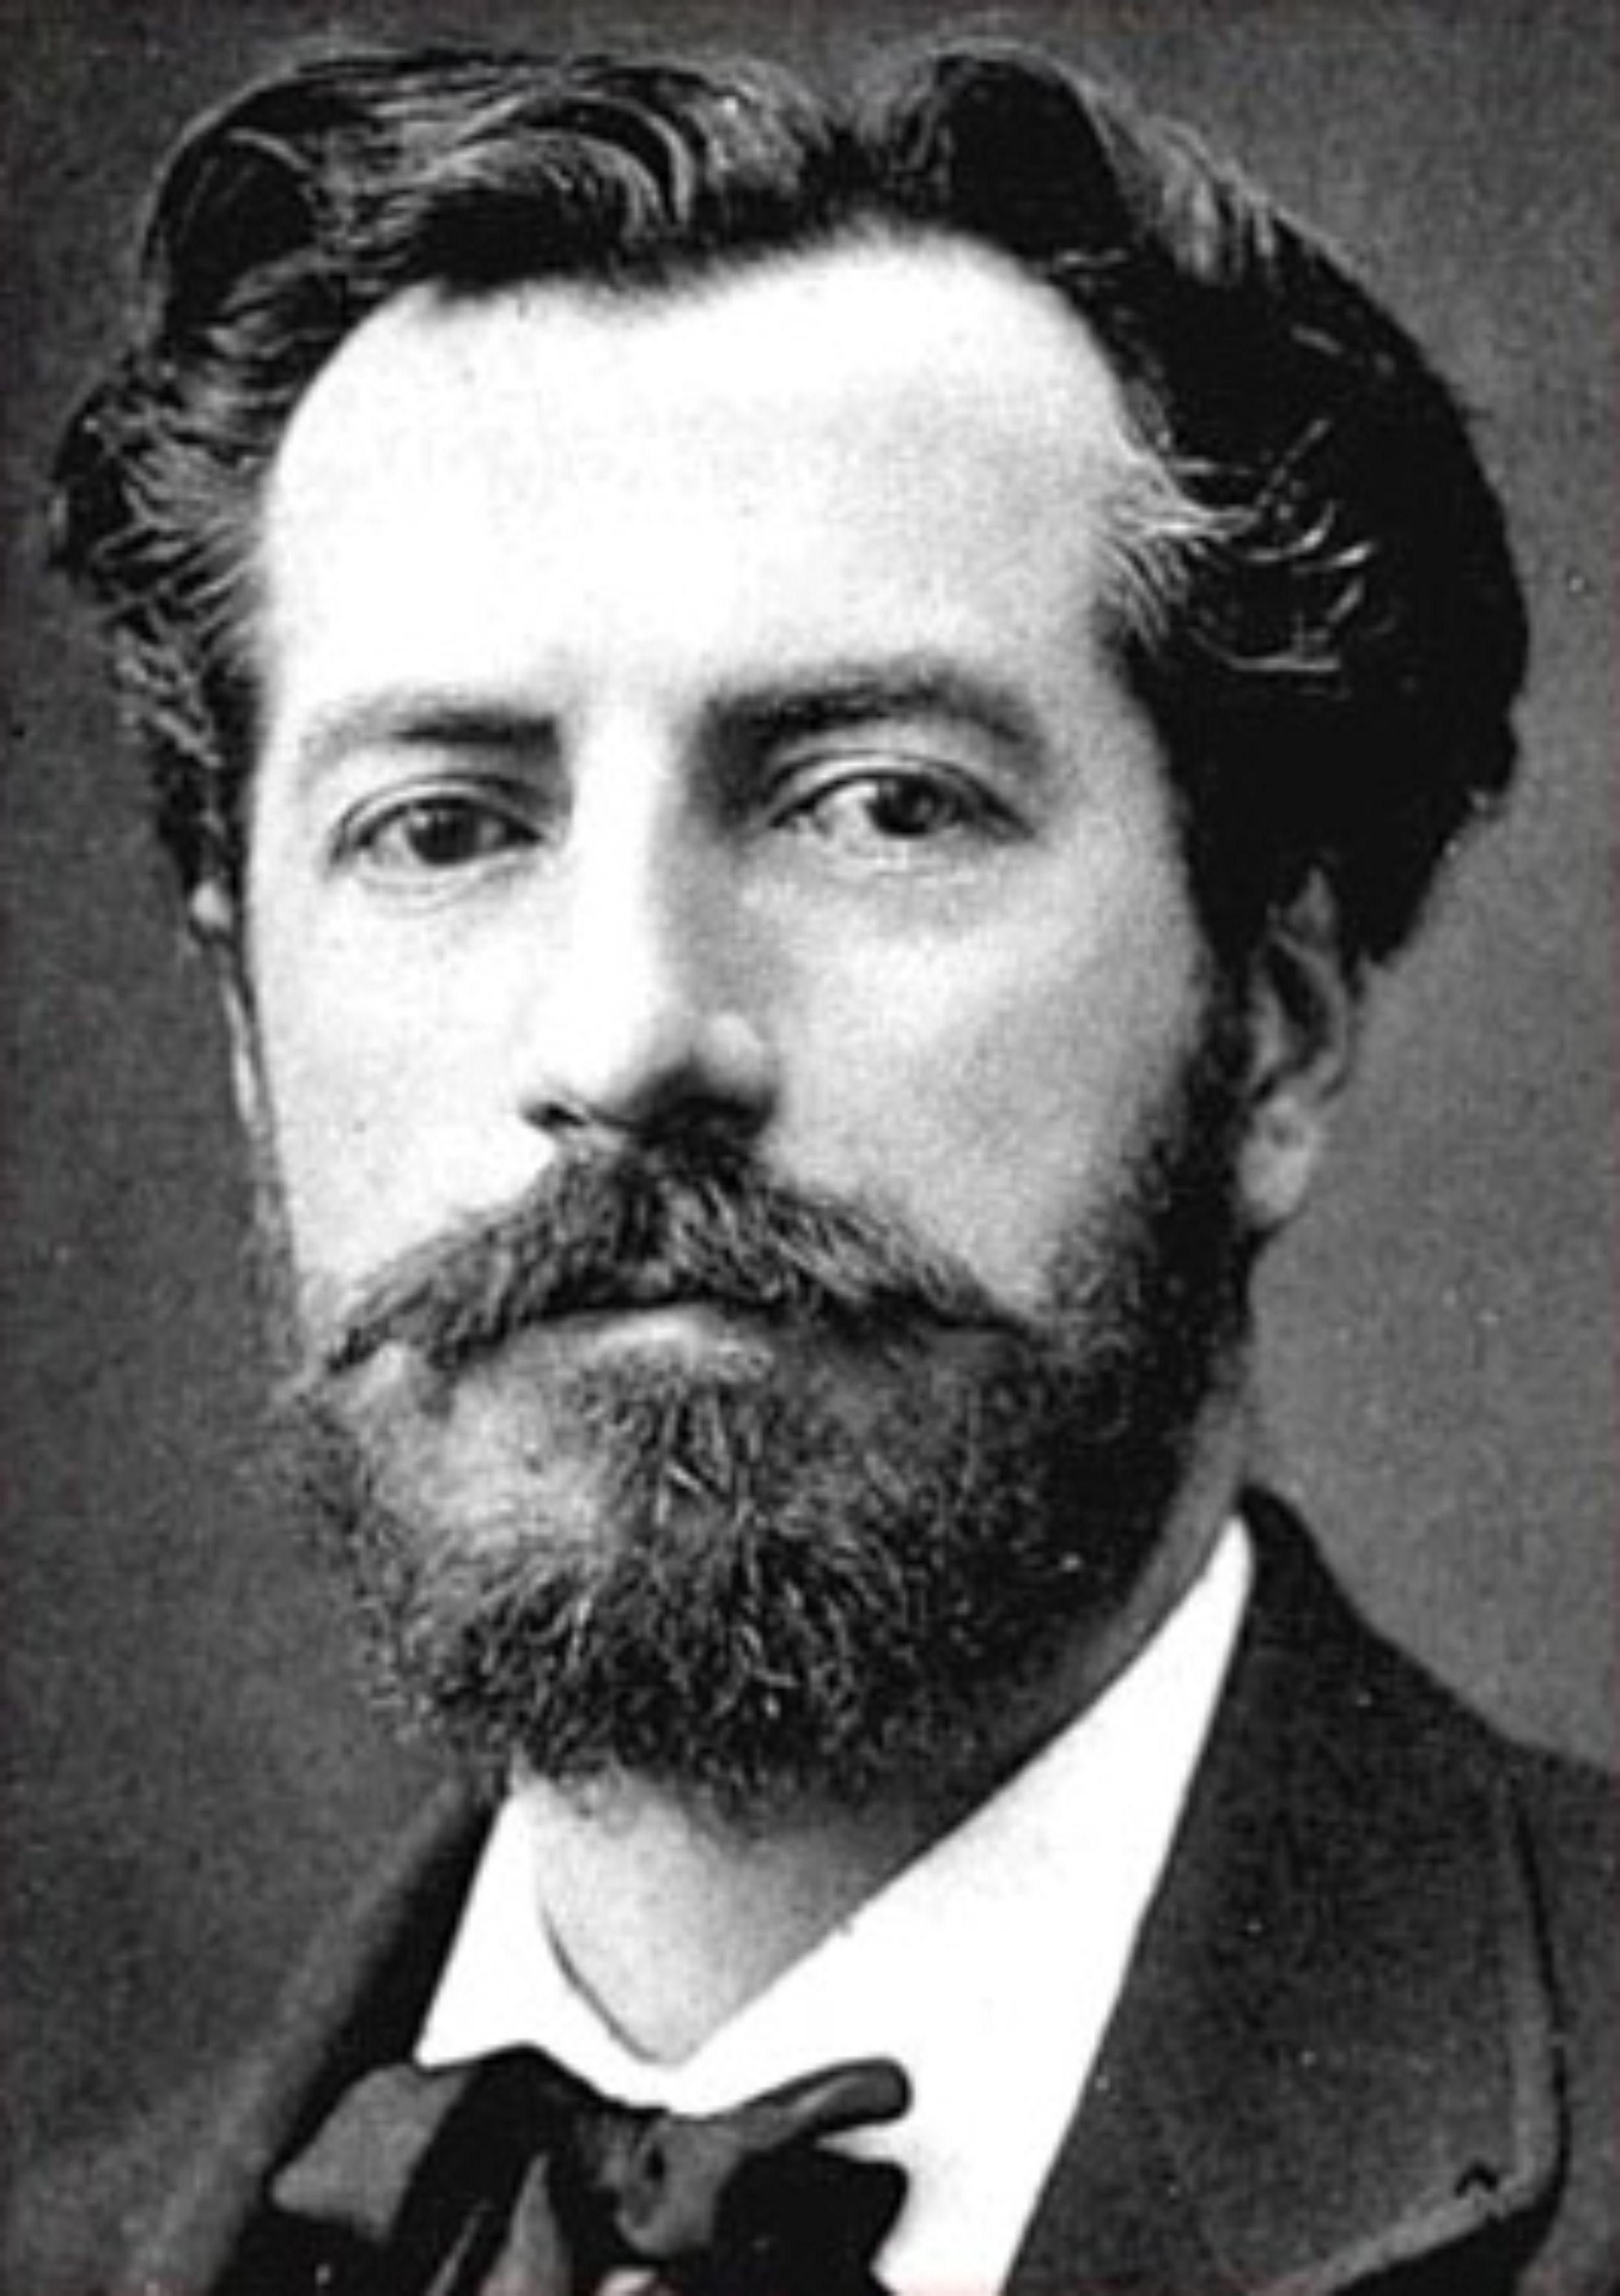  Frédéric Auguste Bartholdi  (1834-1904)